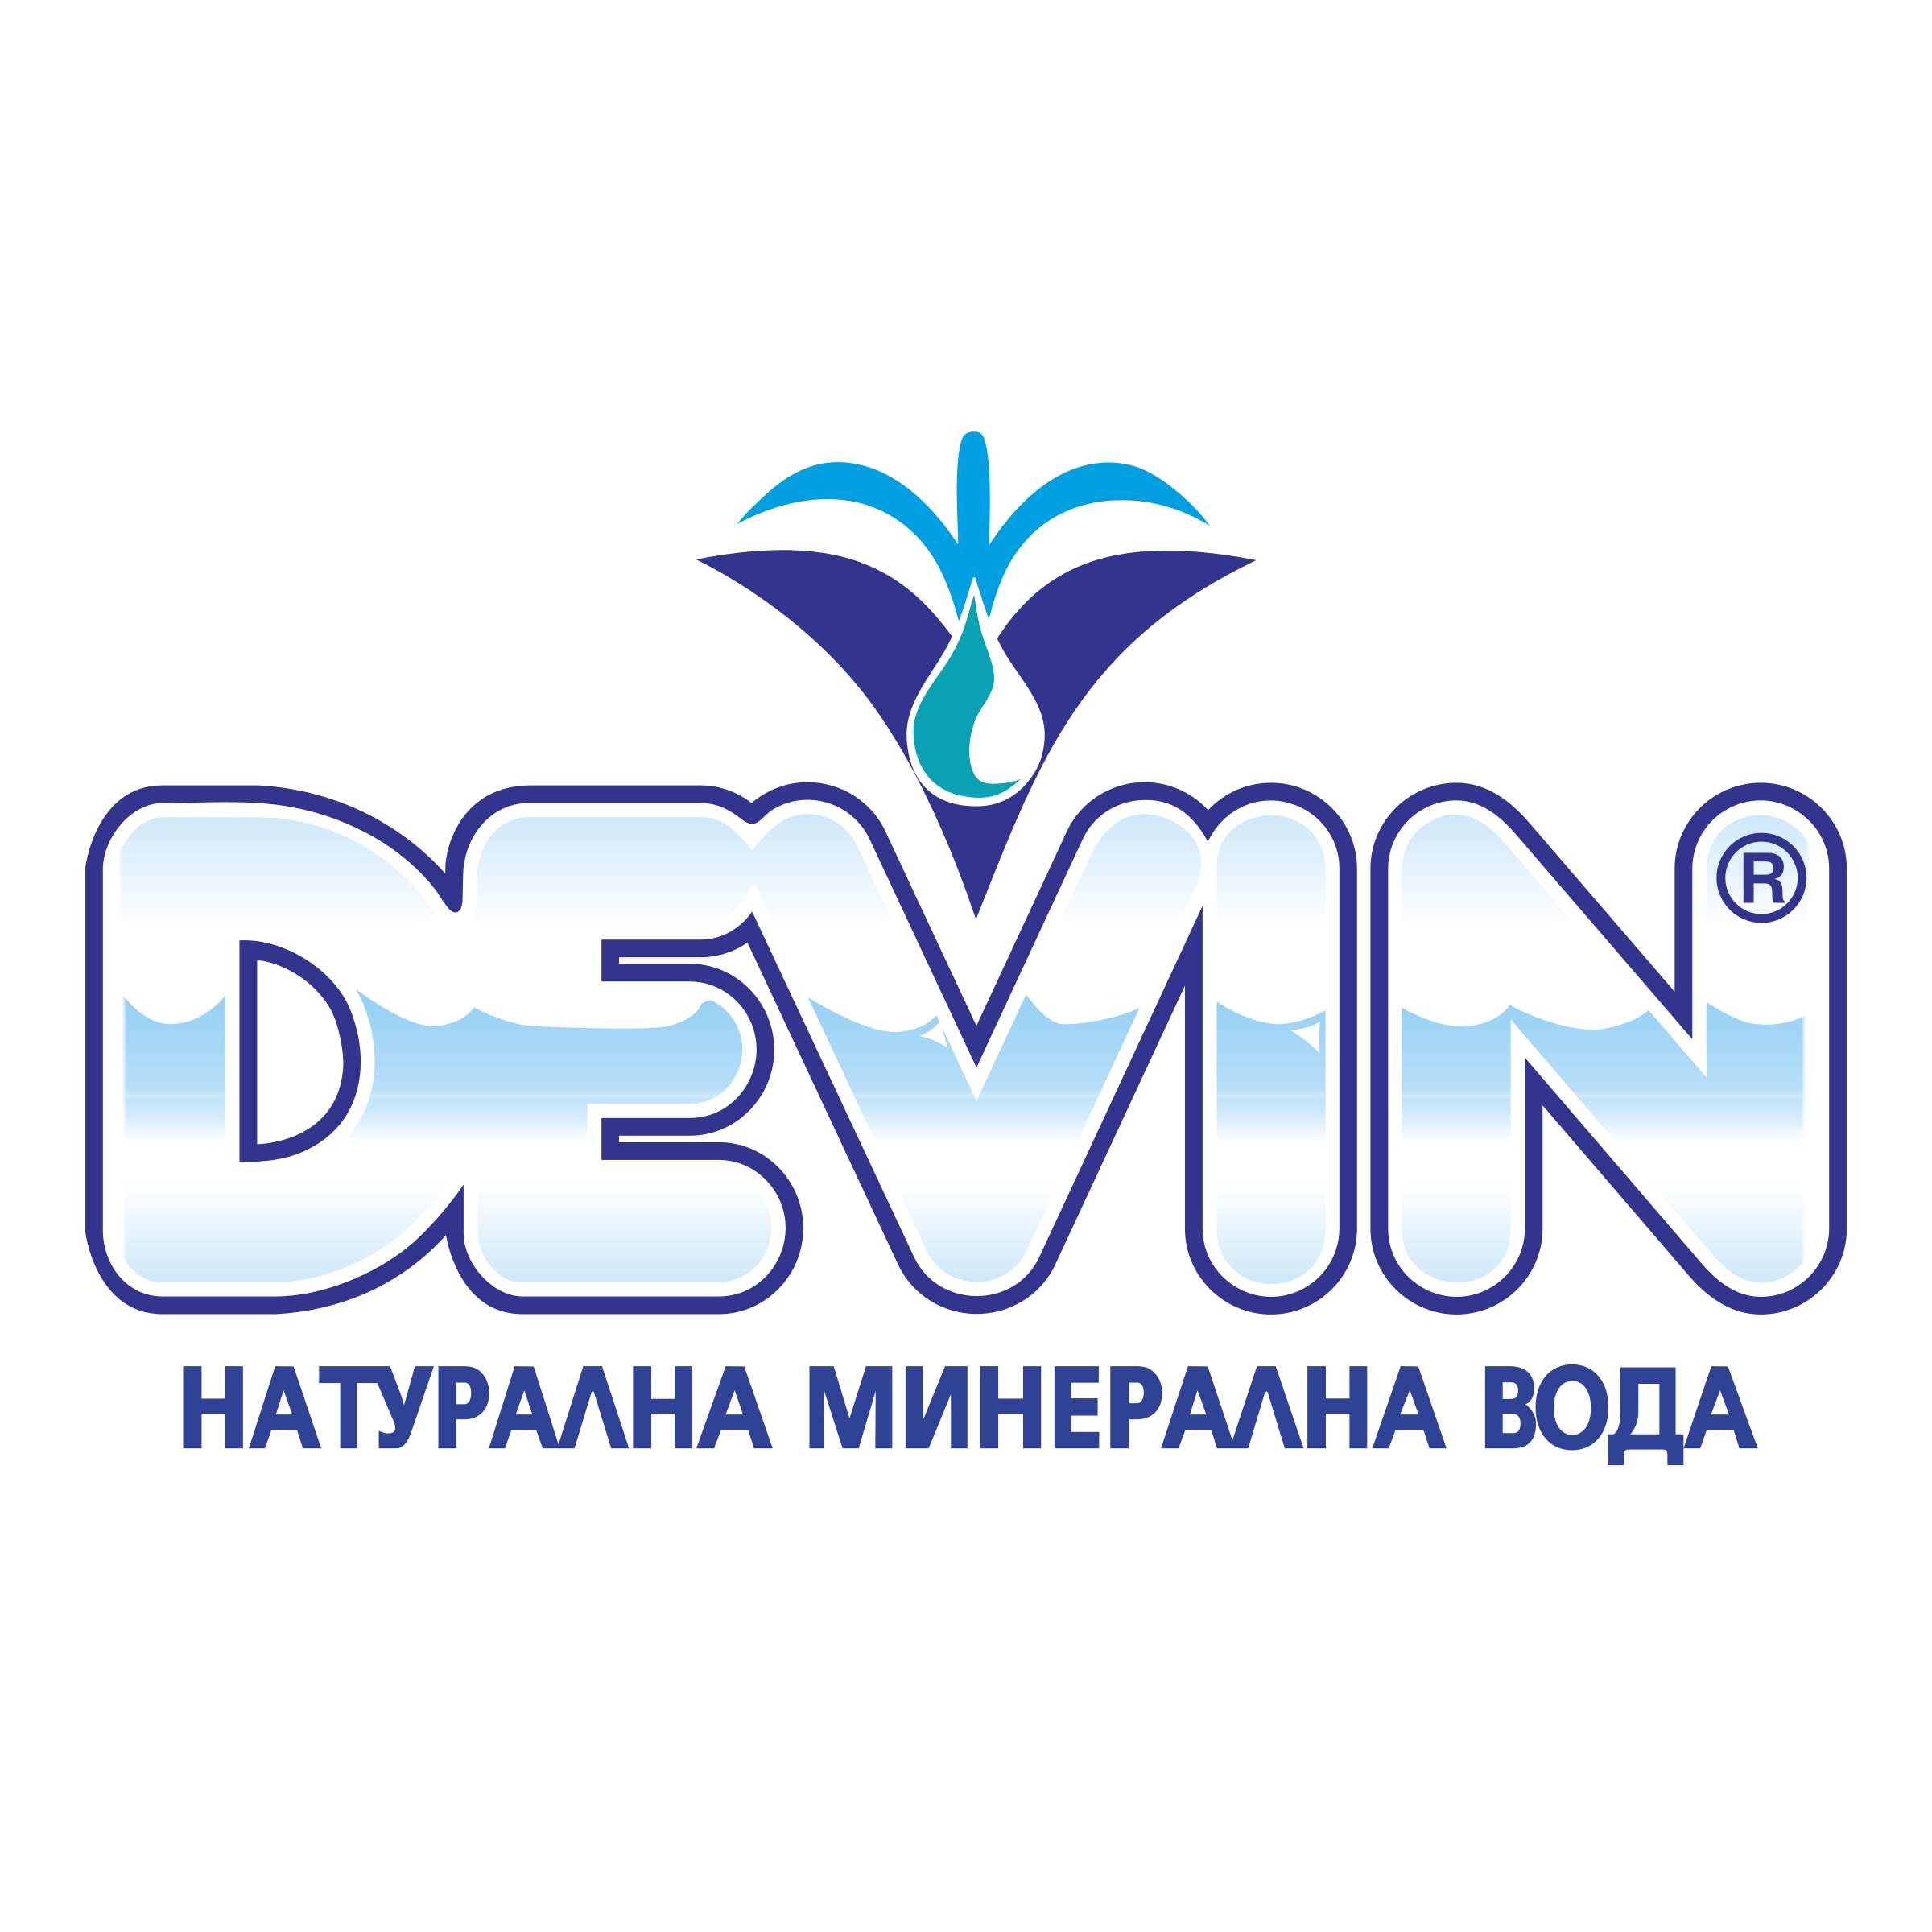 Devin Logo - Devin Logo PNG Transparent & SVG Vector